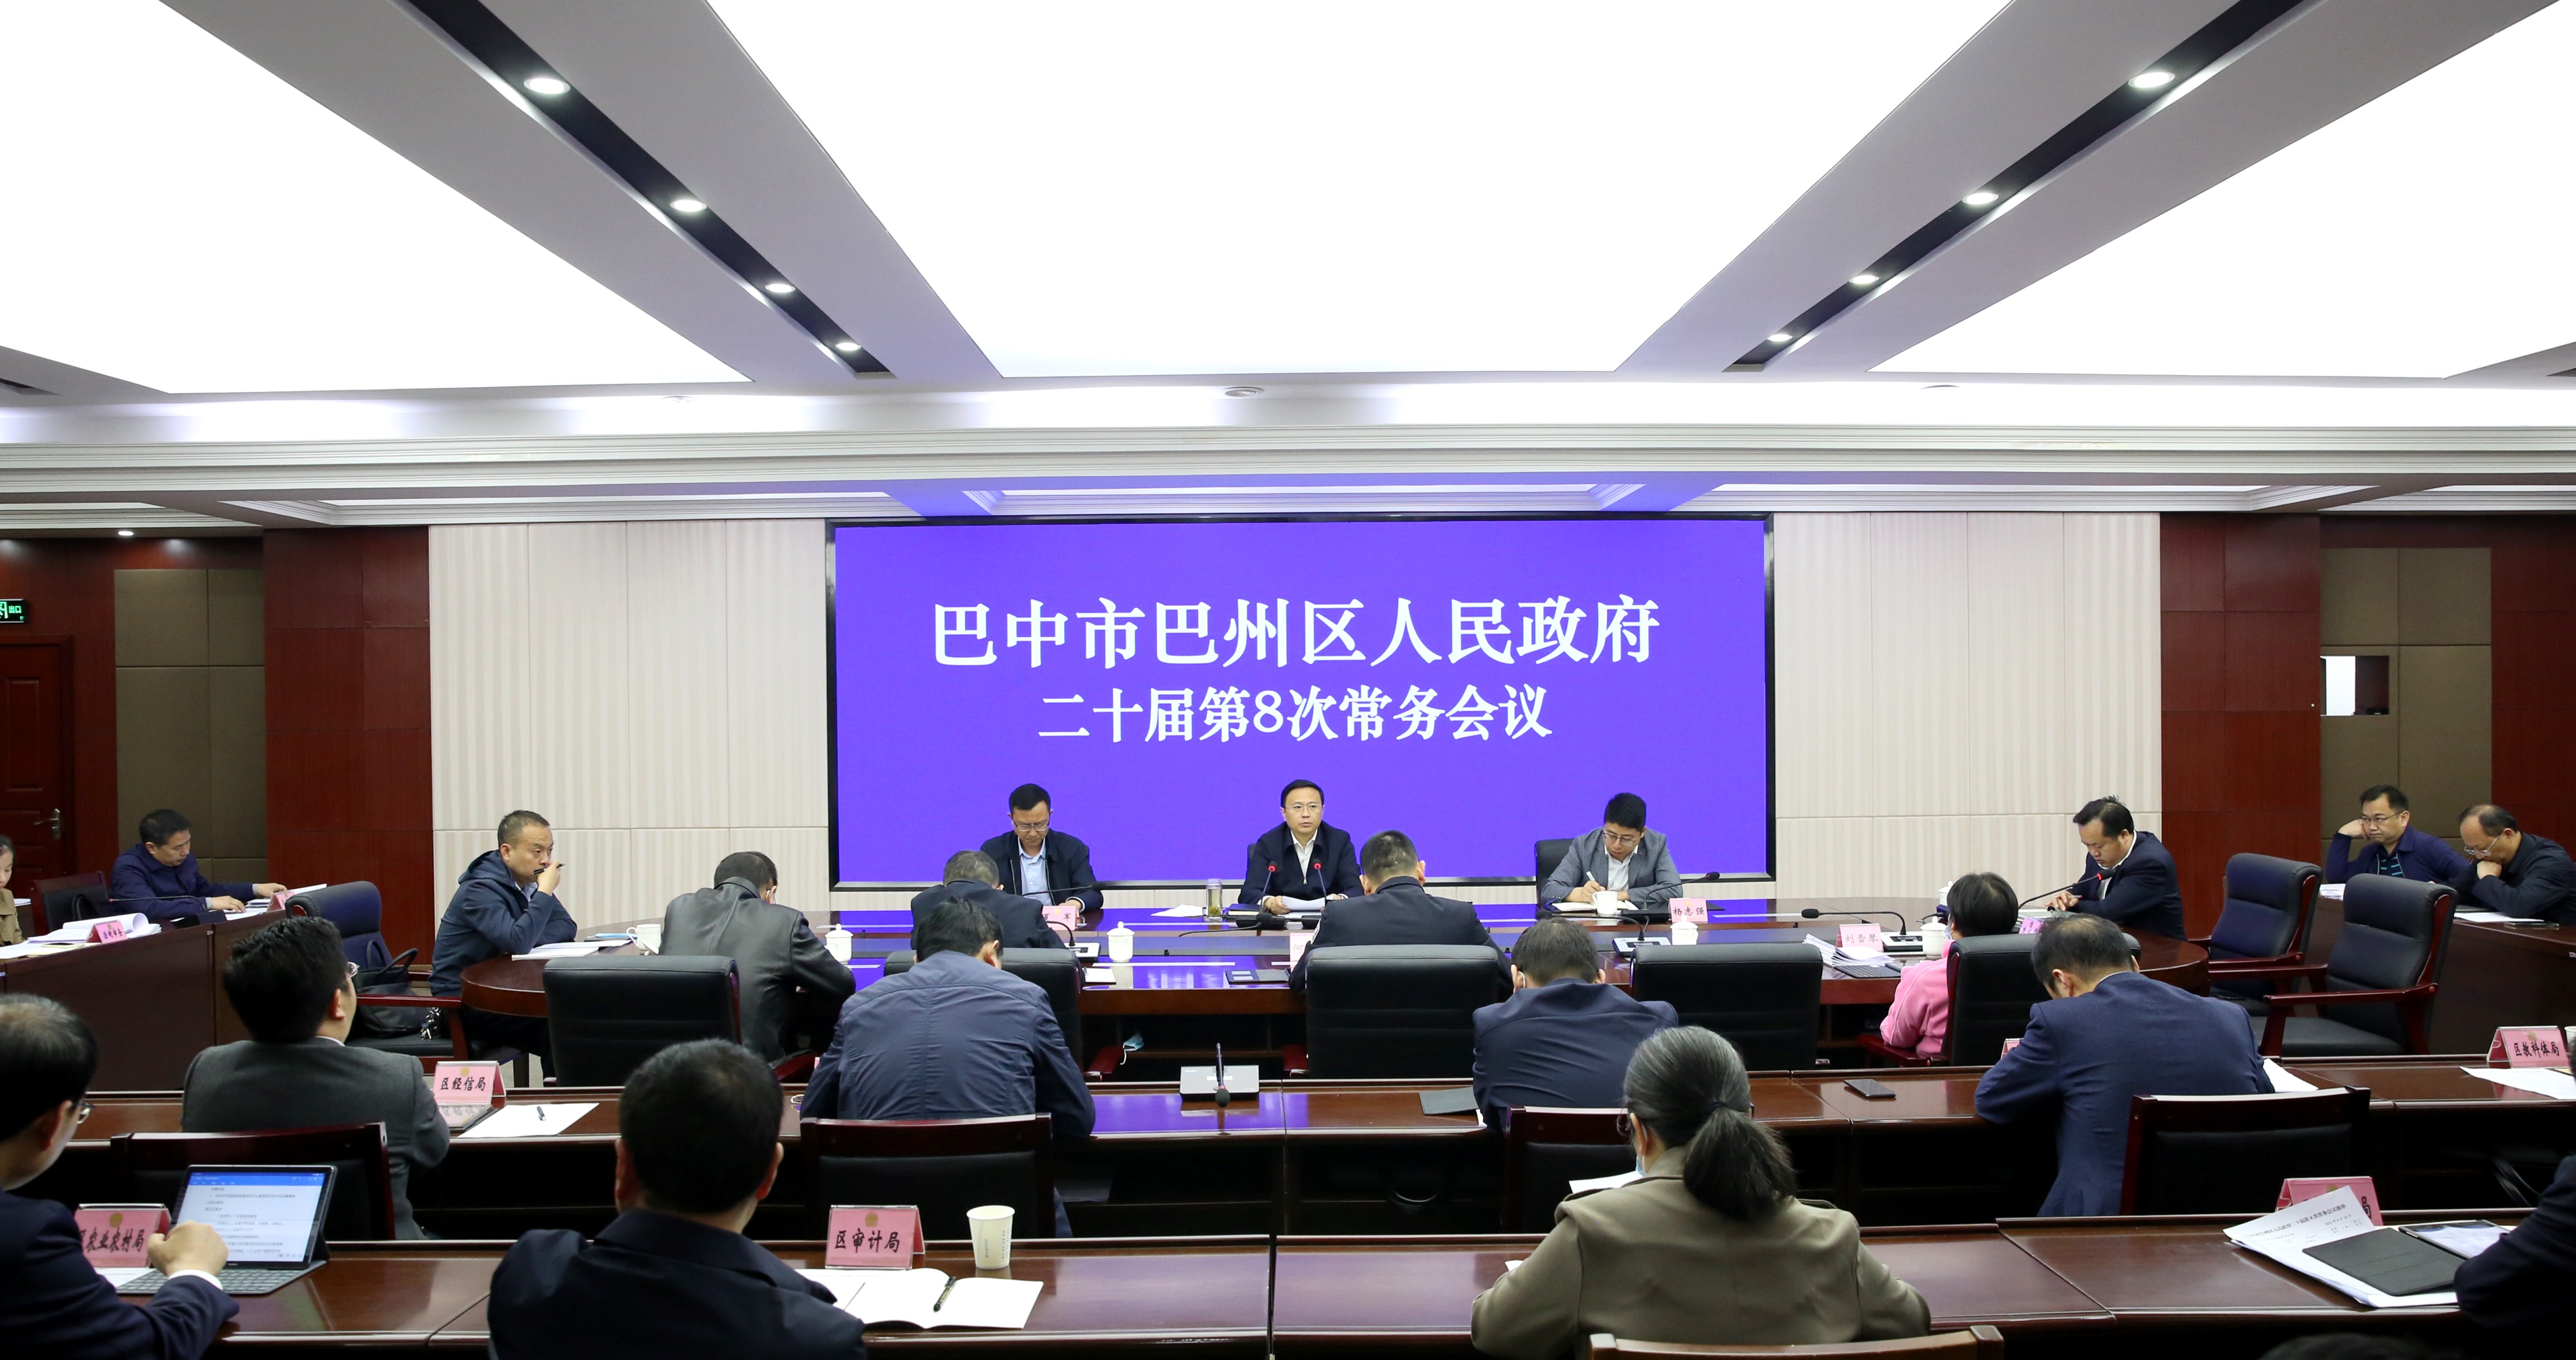 黄俊霖主持召开区政府二十届第8次常务会议